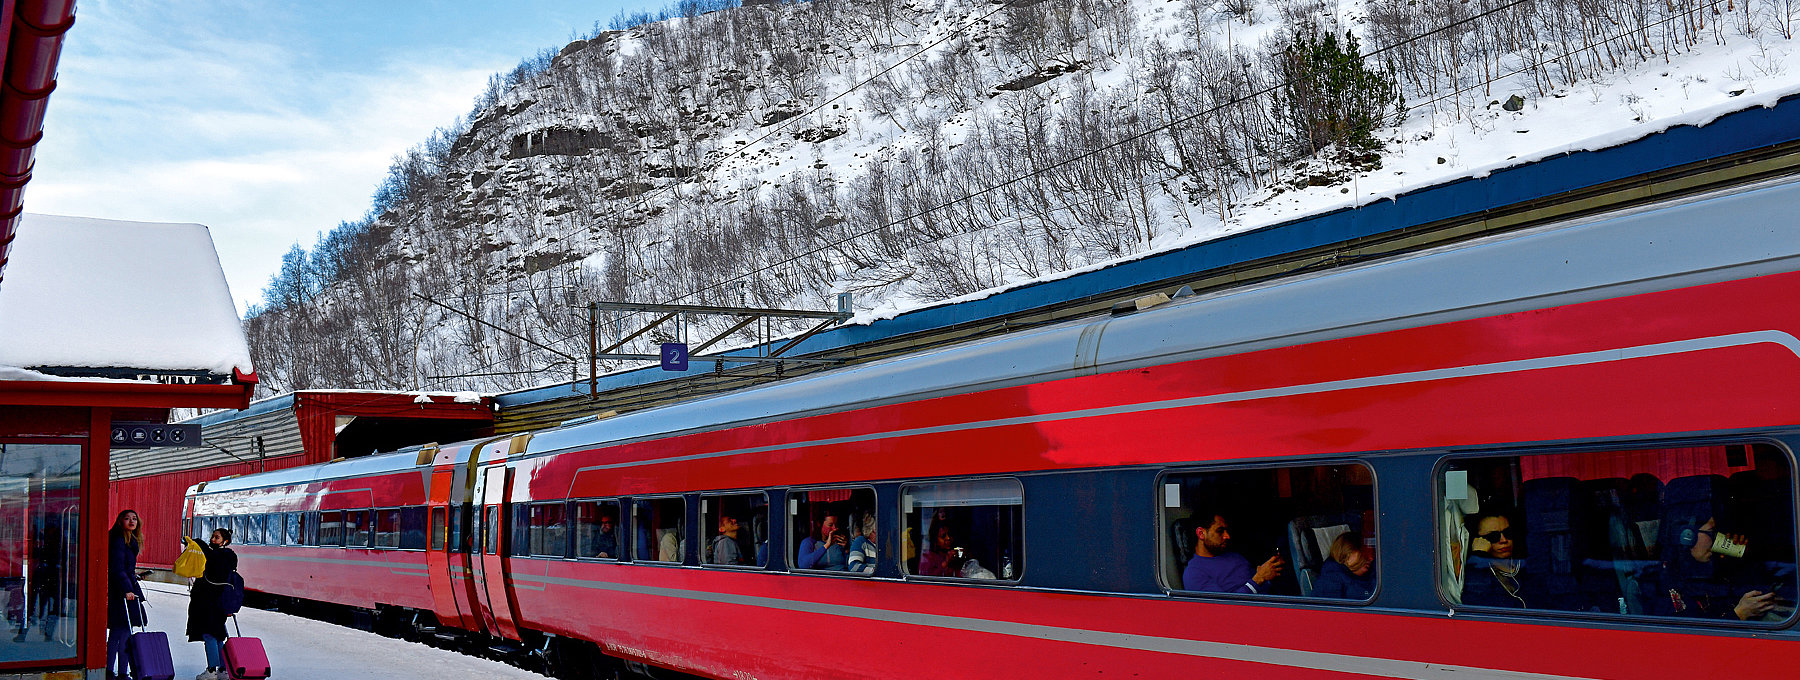 Roter Zug mit Passagieren, verschneiter Bahnsteig und Felsberg